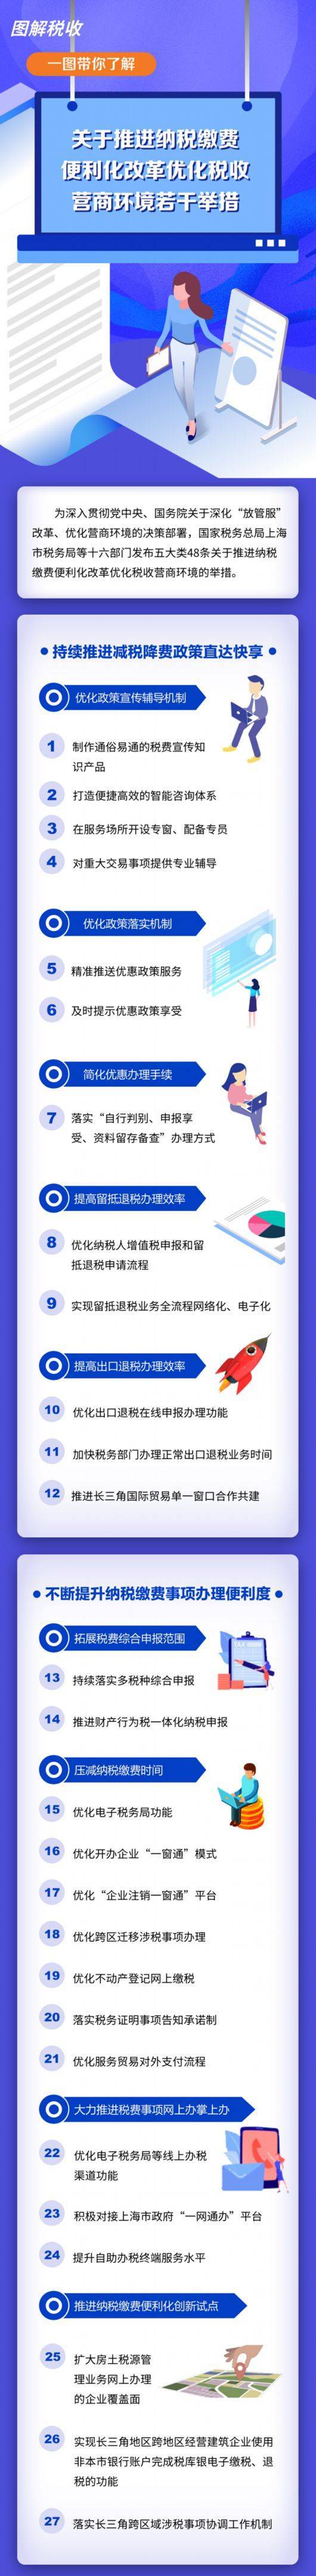 纳税缴费更方便 上海16部门推出48条便利化举措